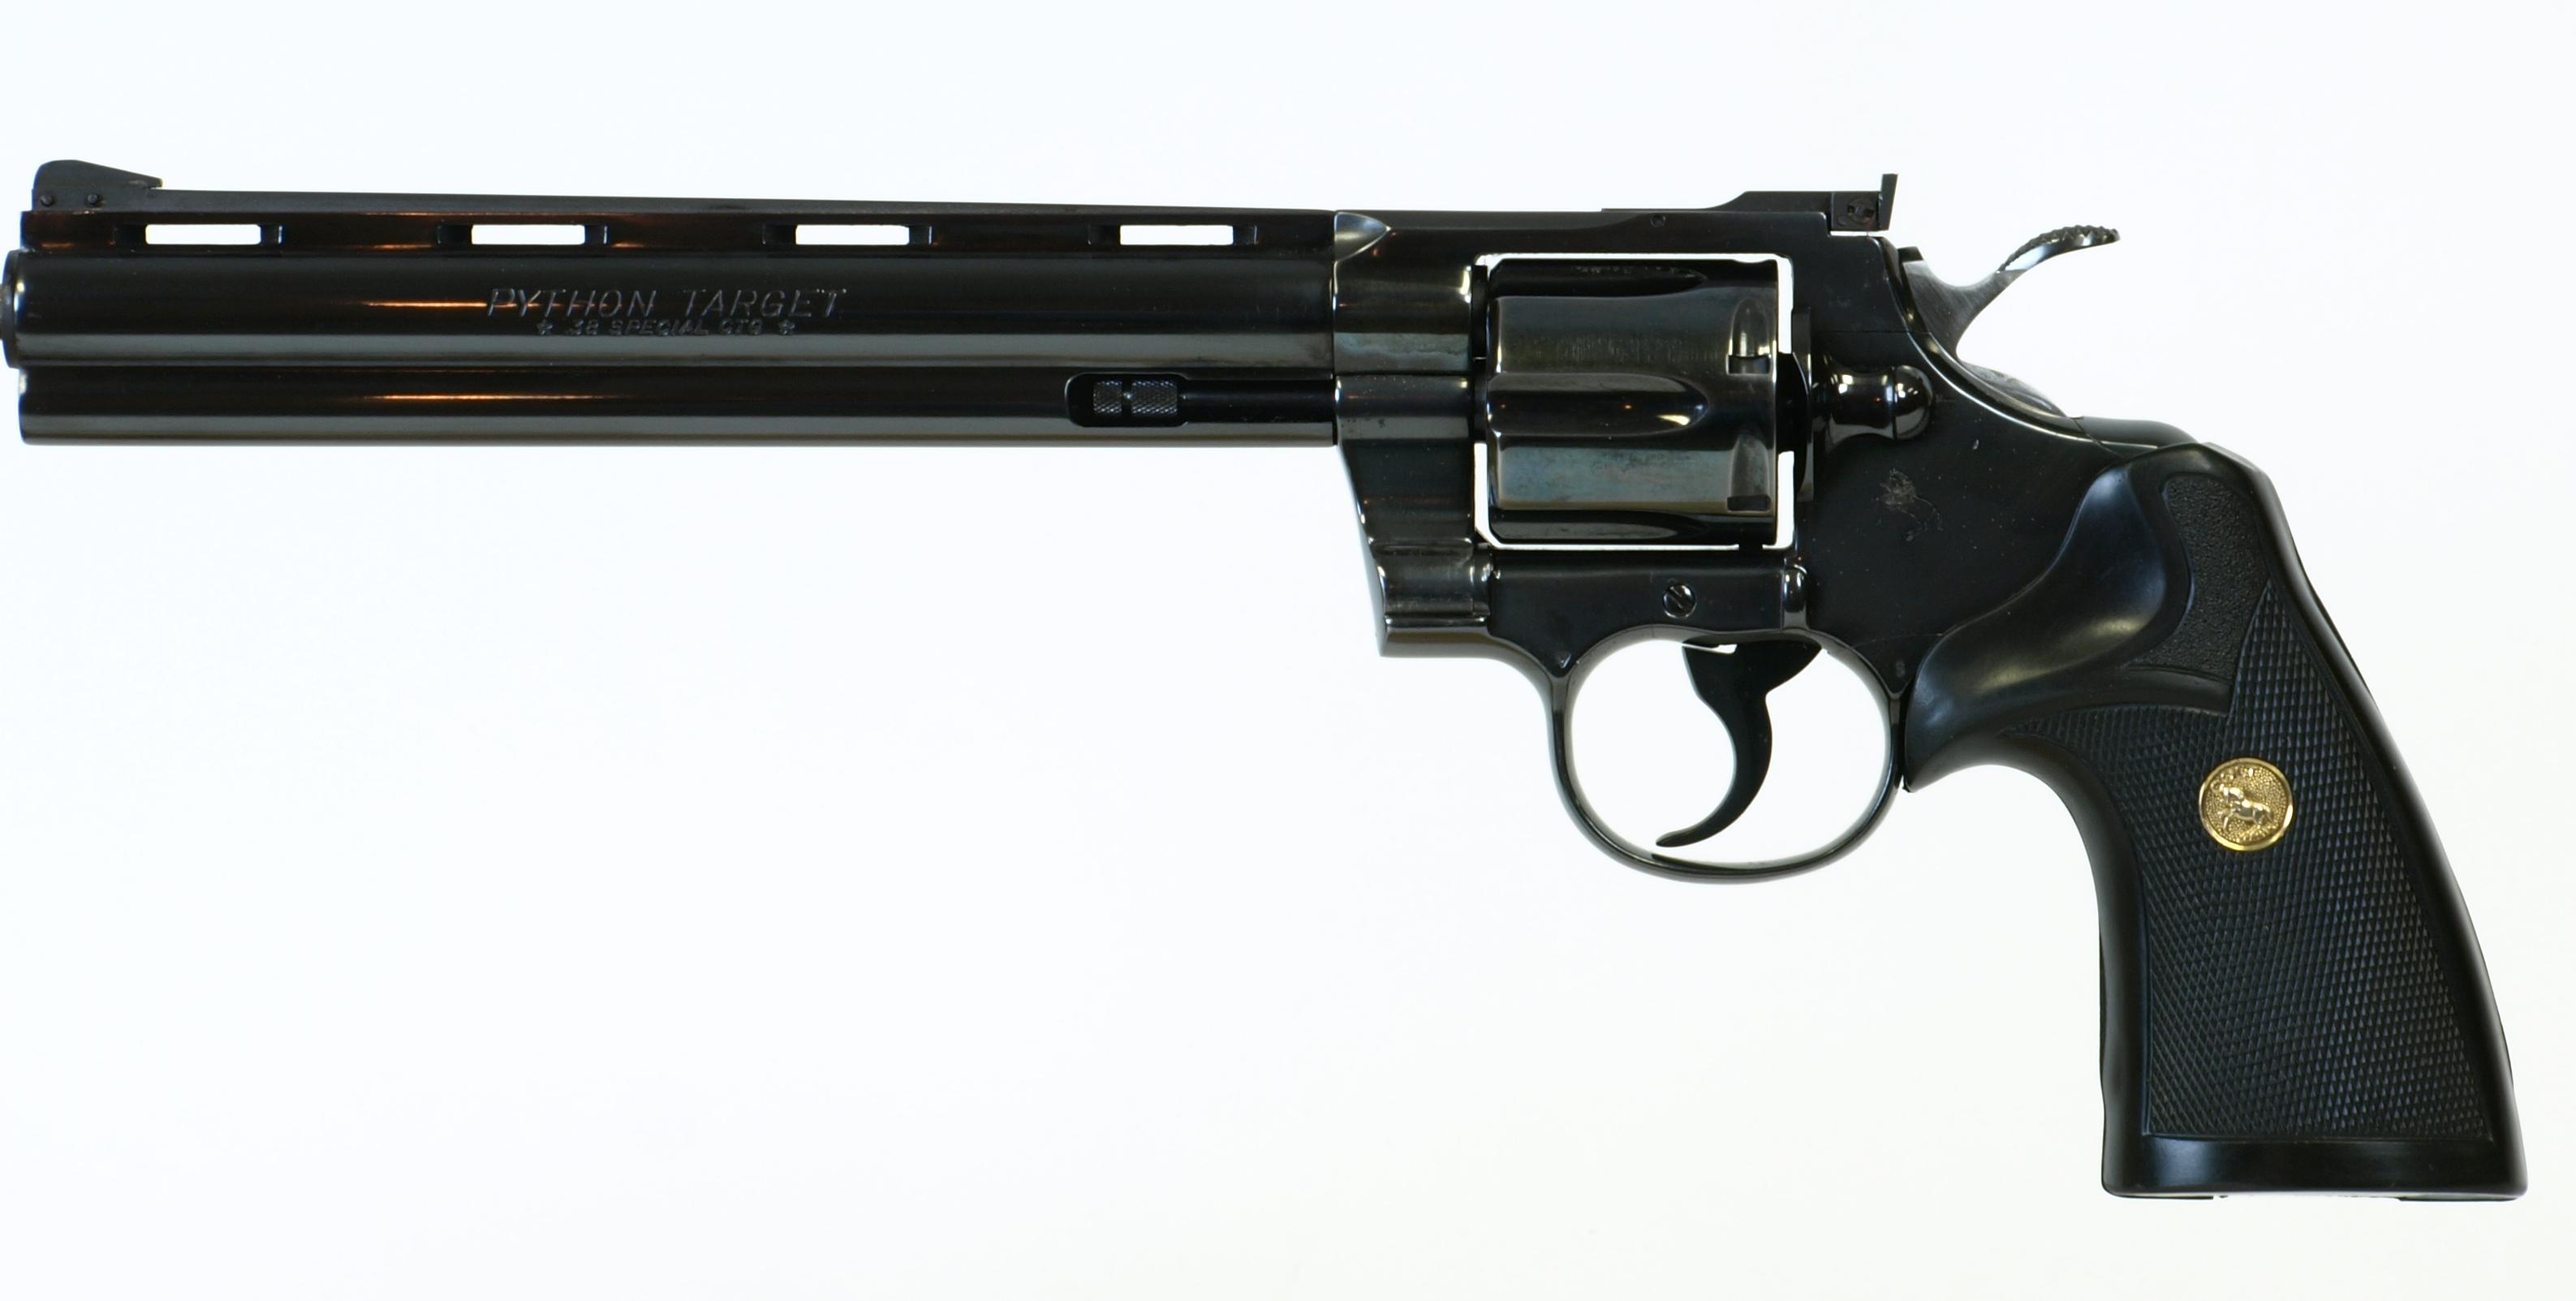 Скачать обои бесплатно Оружие, Револьвер Кольт Питон картинка на рабочий стол ПК